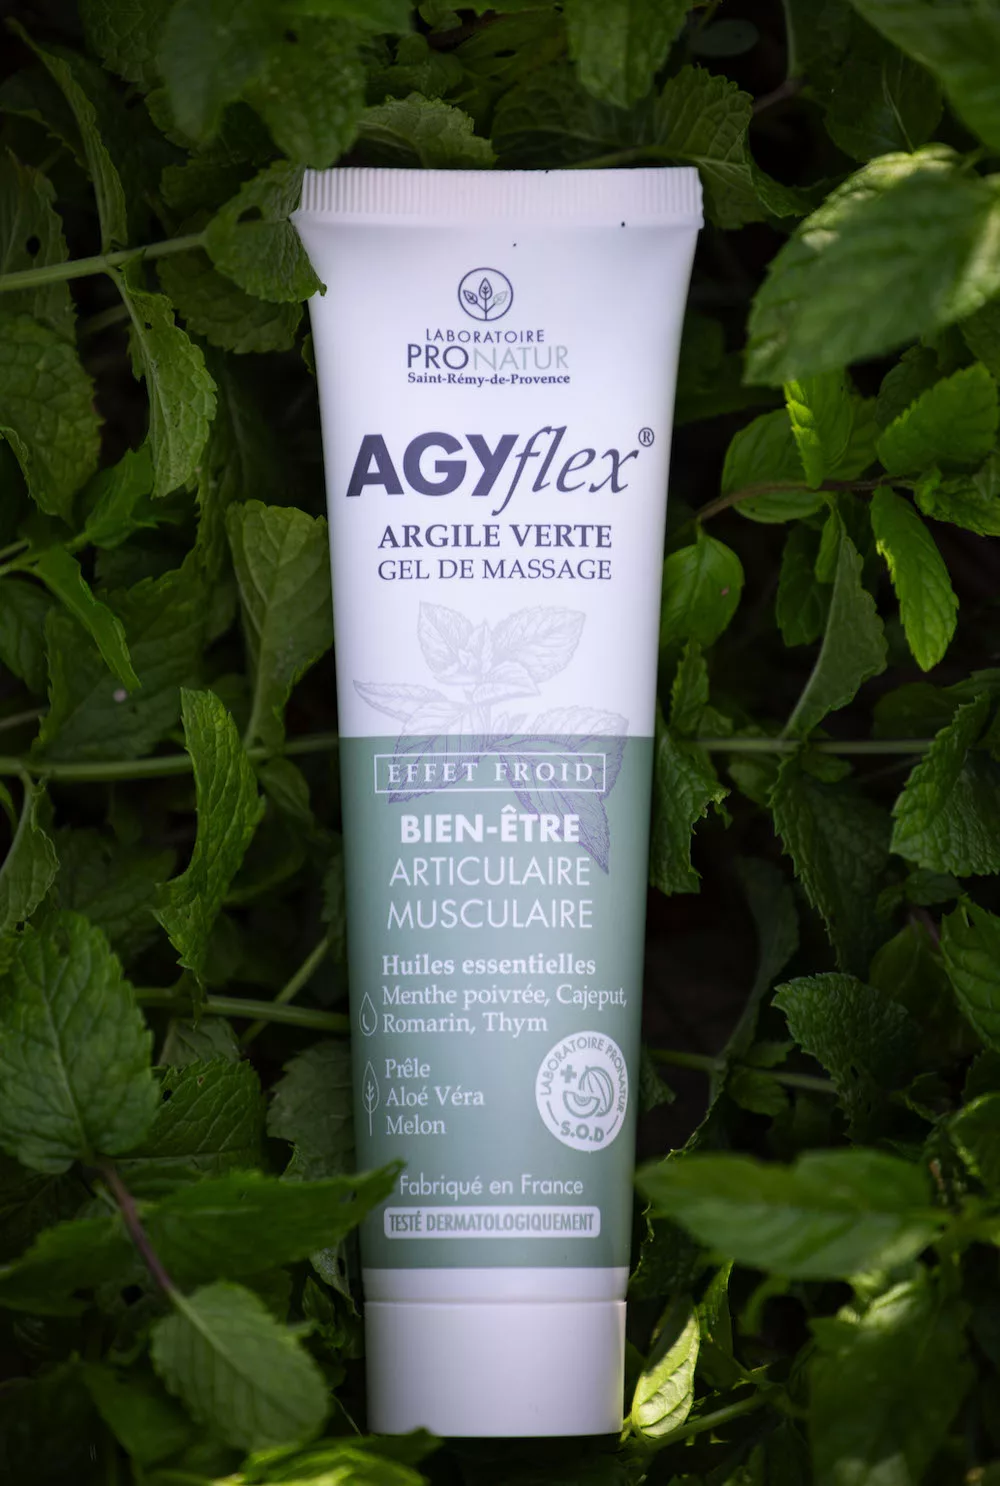 AGYFLEX, gel de massage à l'argile verte pour les articulations et muscles